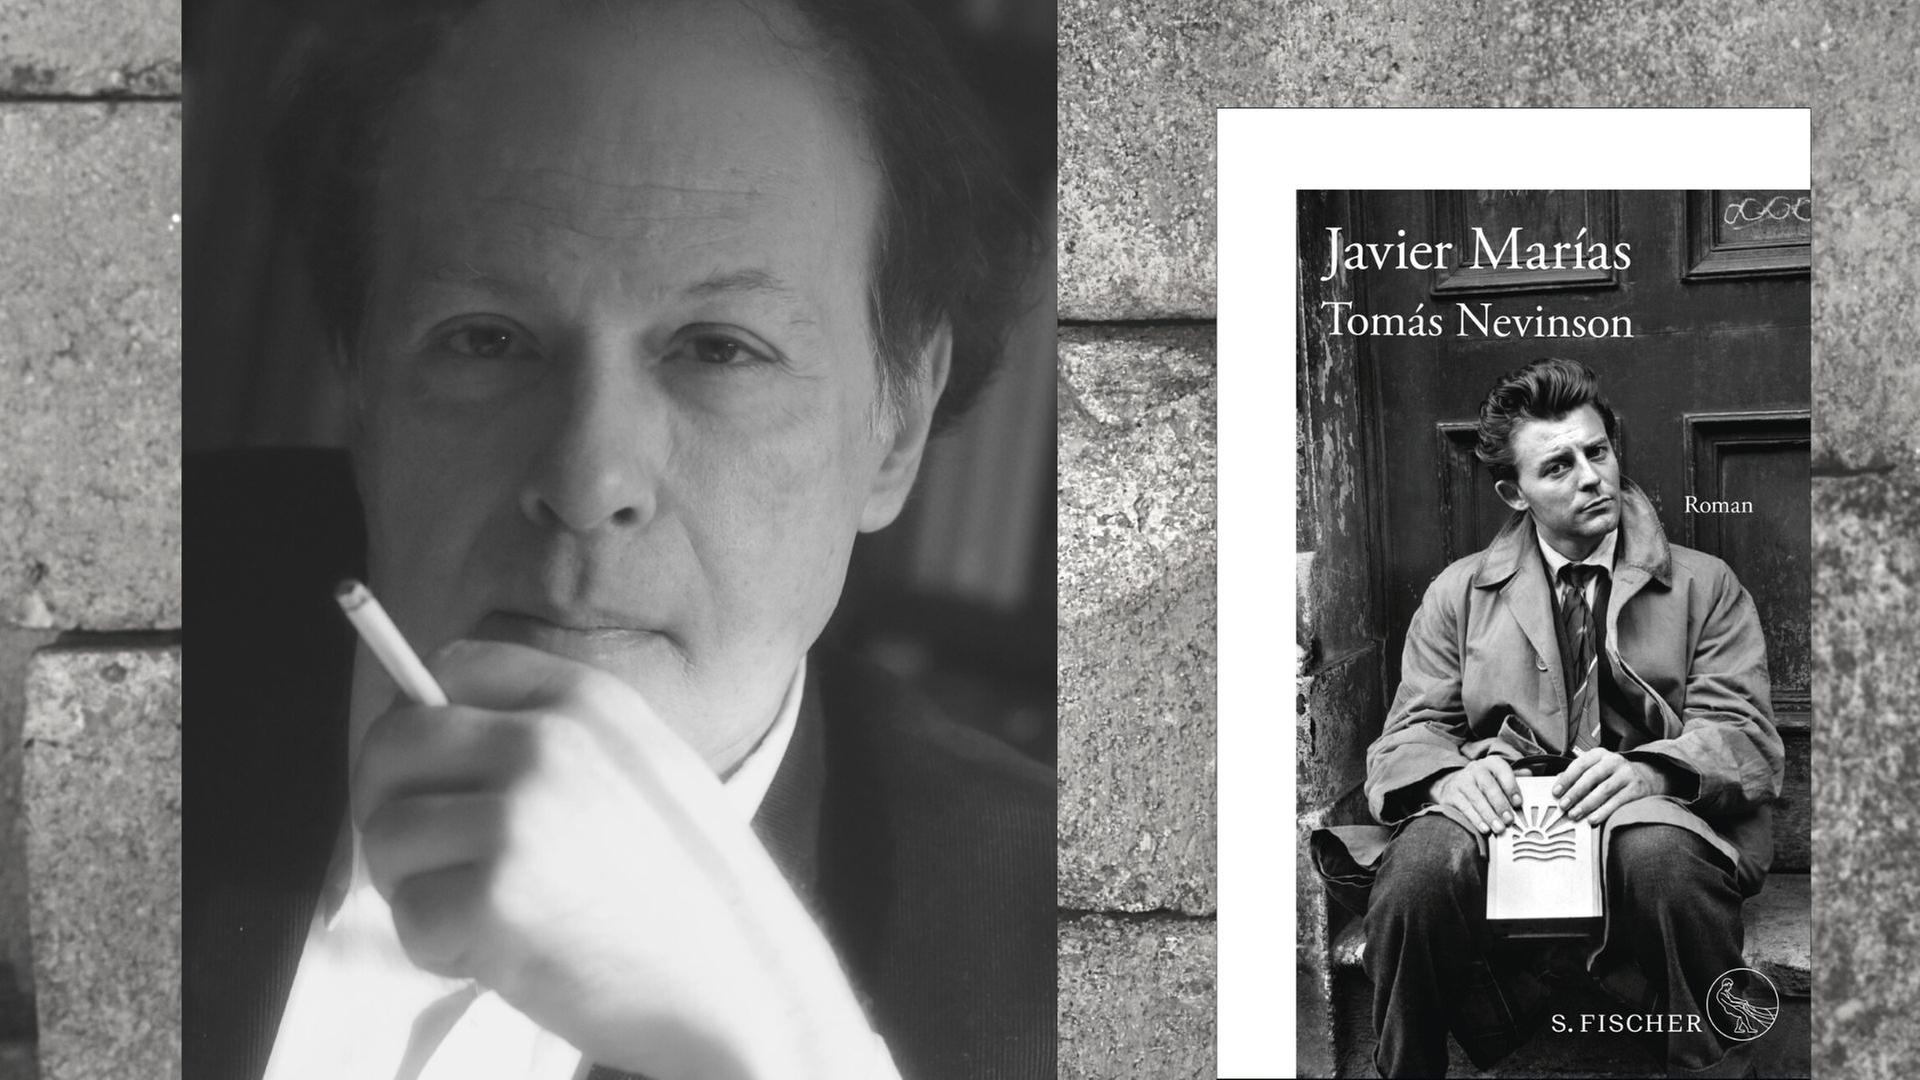 Javier Marías ist im Septemer 2022 verstorben. Zum Spanien-Schwerpunkt der Frankfurter Buchmesse erscheint nun der letzte Roman des spanischen Autors „Tomás Nevinson“.